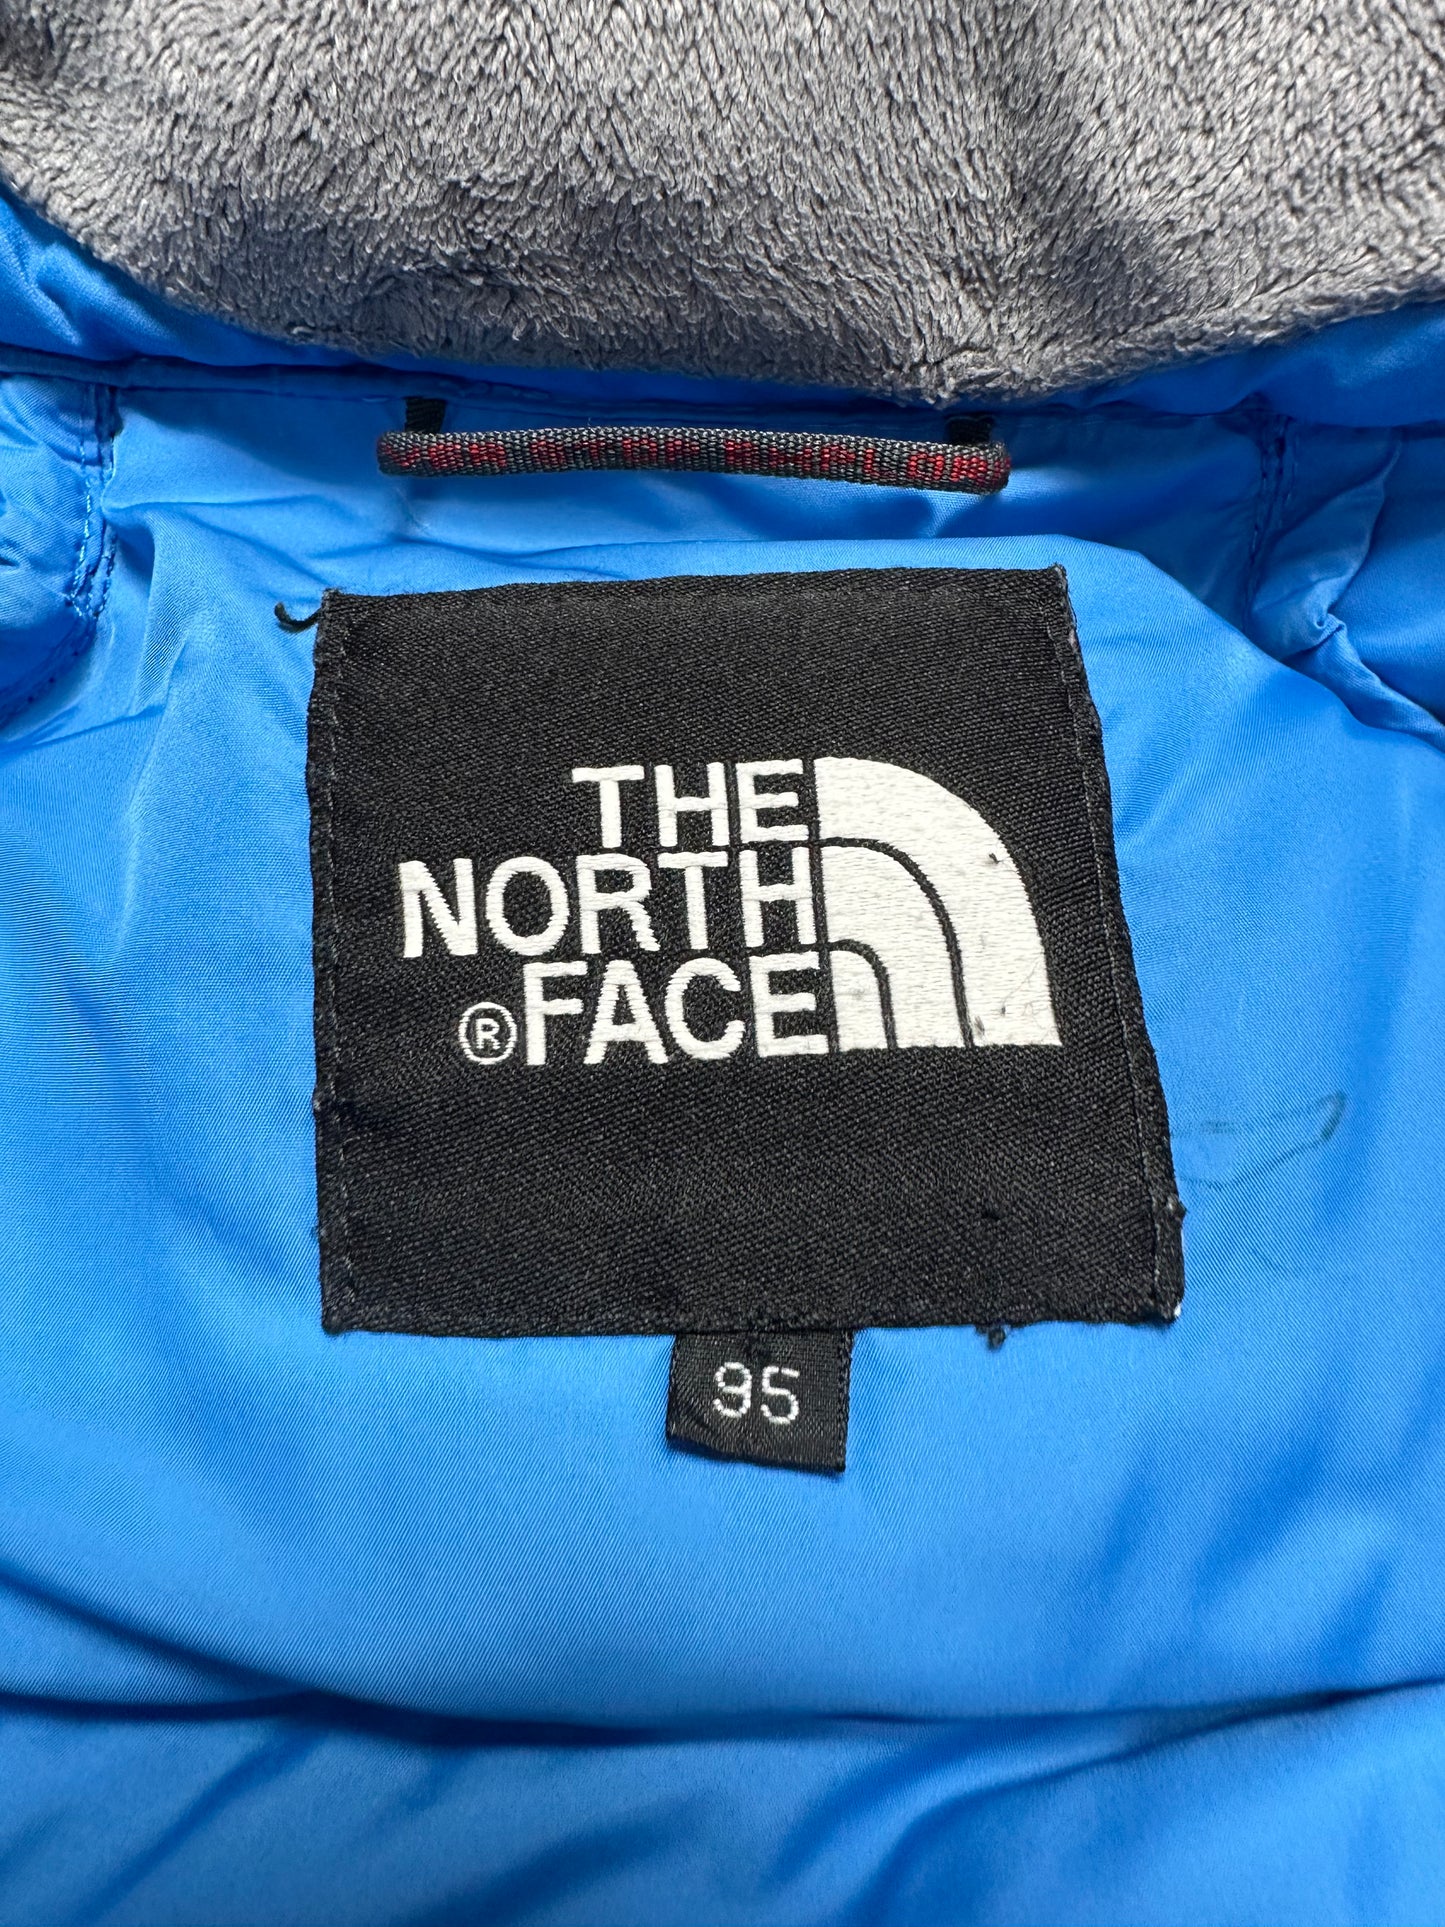 10027【THE NORTH FACE】ザノースフェイス メンズ HYVENT ハイベント シグマ ダウンジャケット 700フィル ブルー 95